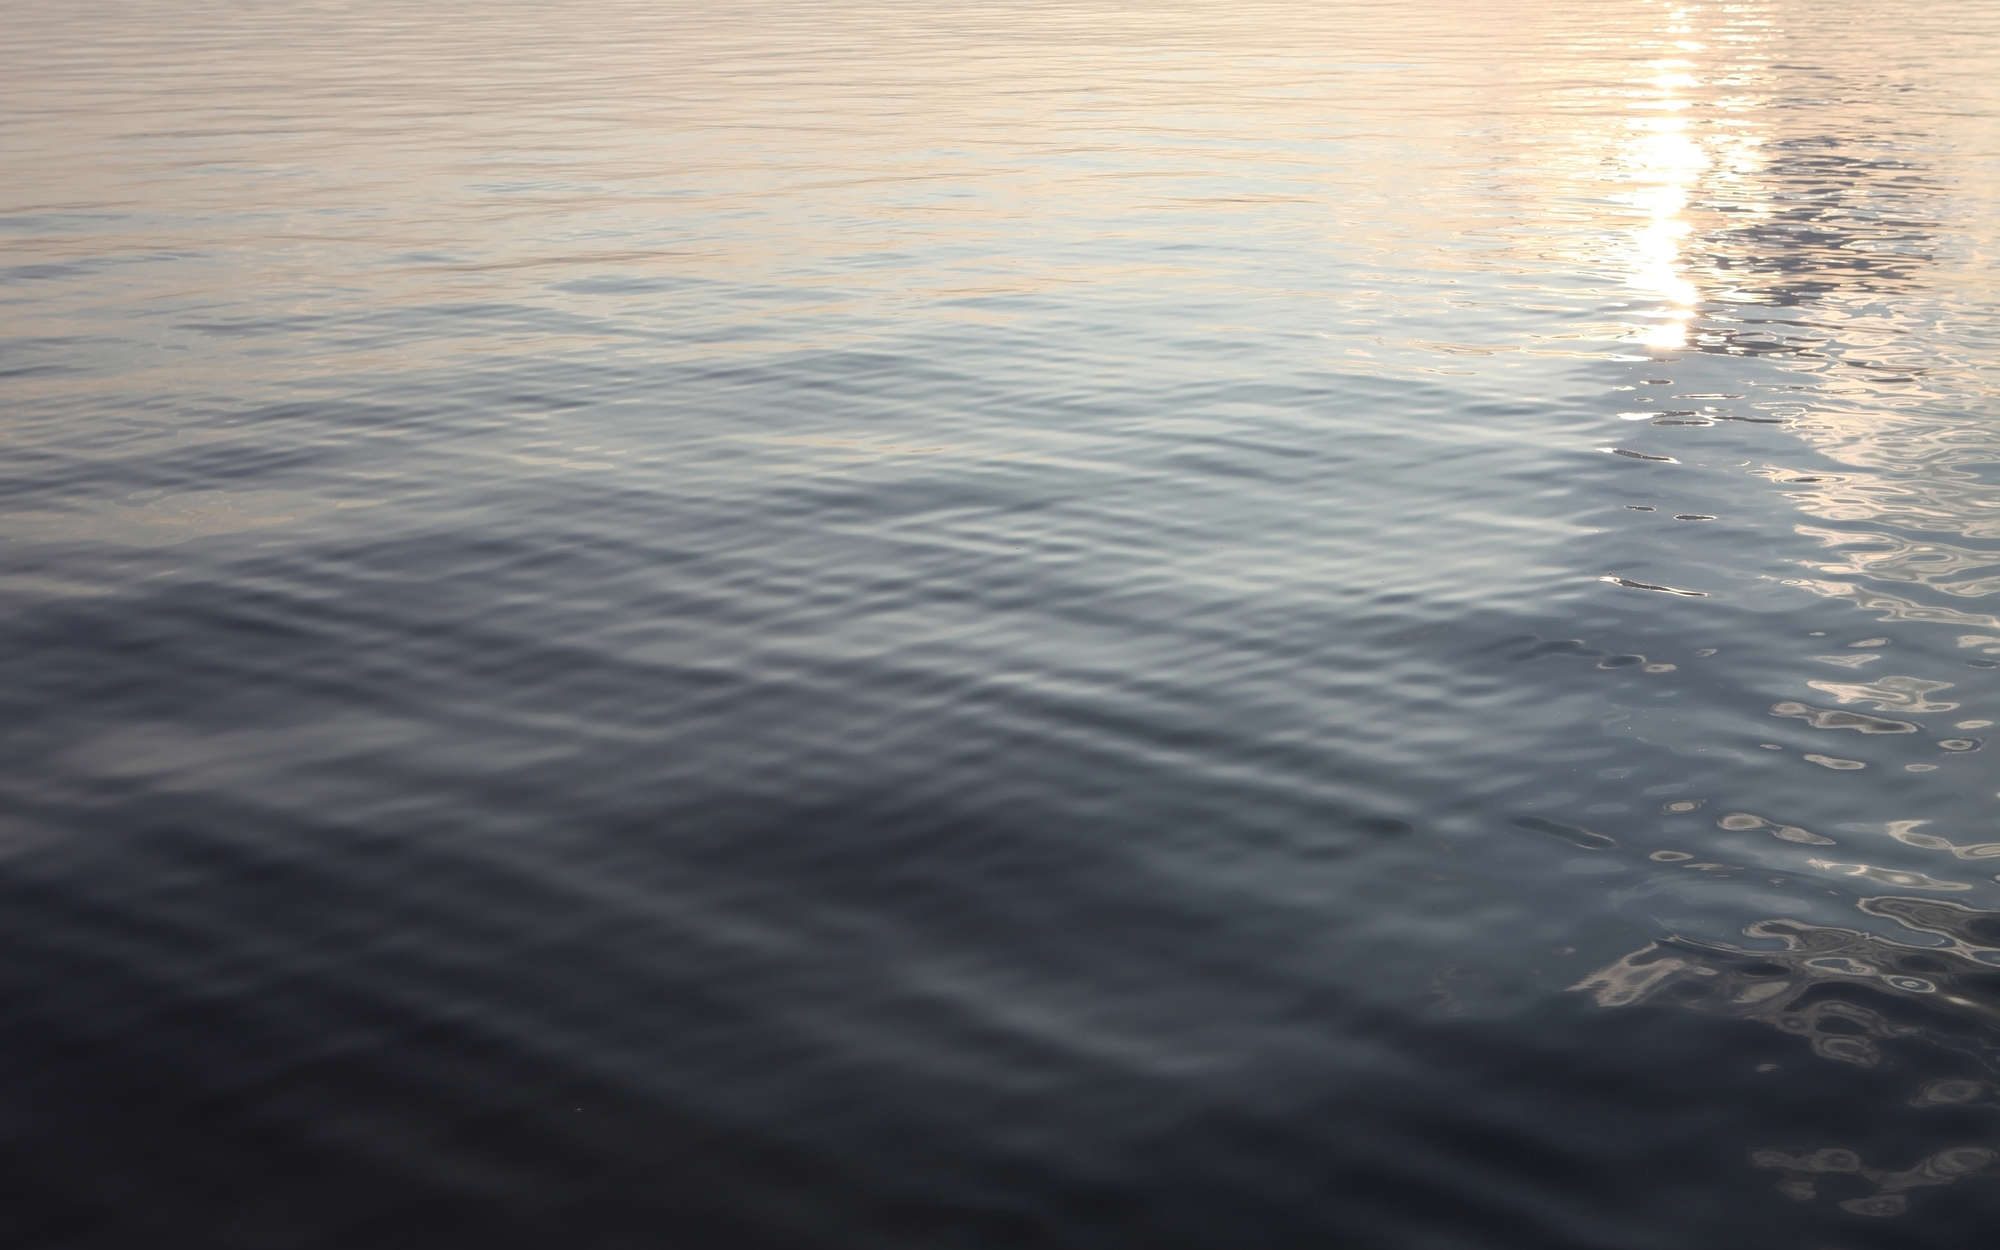             Fototapete Ruhiger See – Strukturiertes Vlies
        